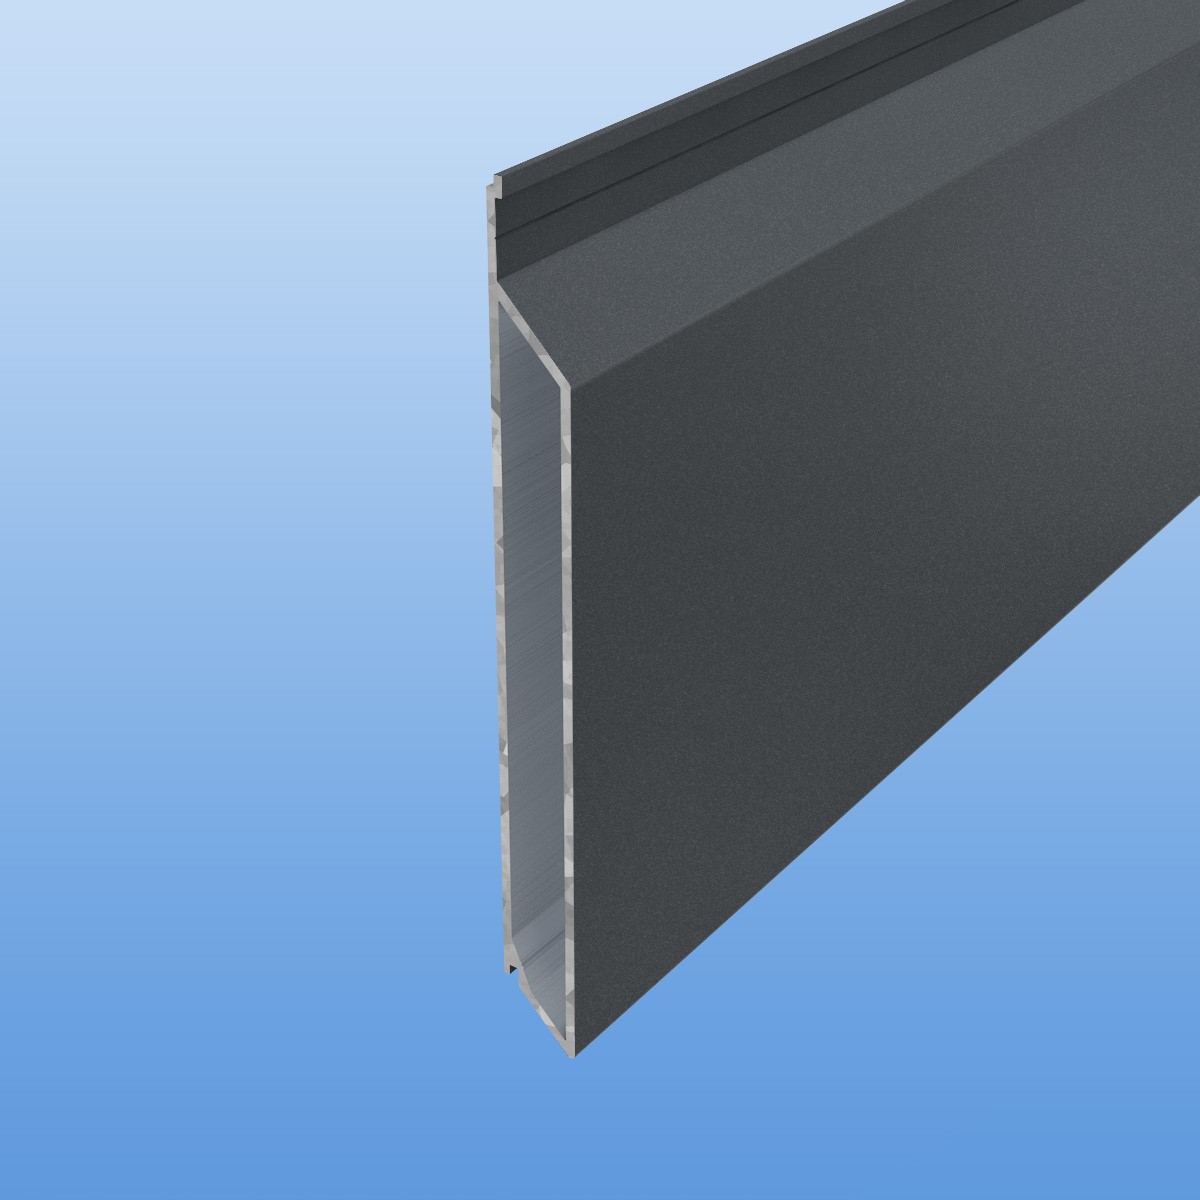 Rhombusprofil aus Aluminium 16mm mit Montagesteg in Anthrazit (DB703) - Sichtfläche 134mm